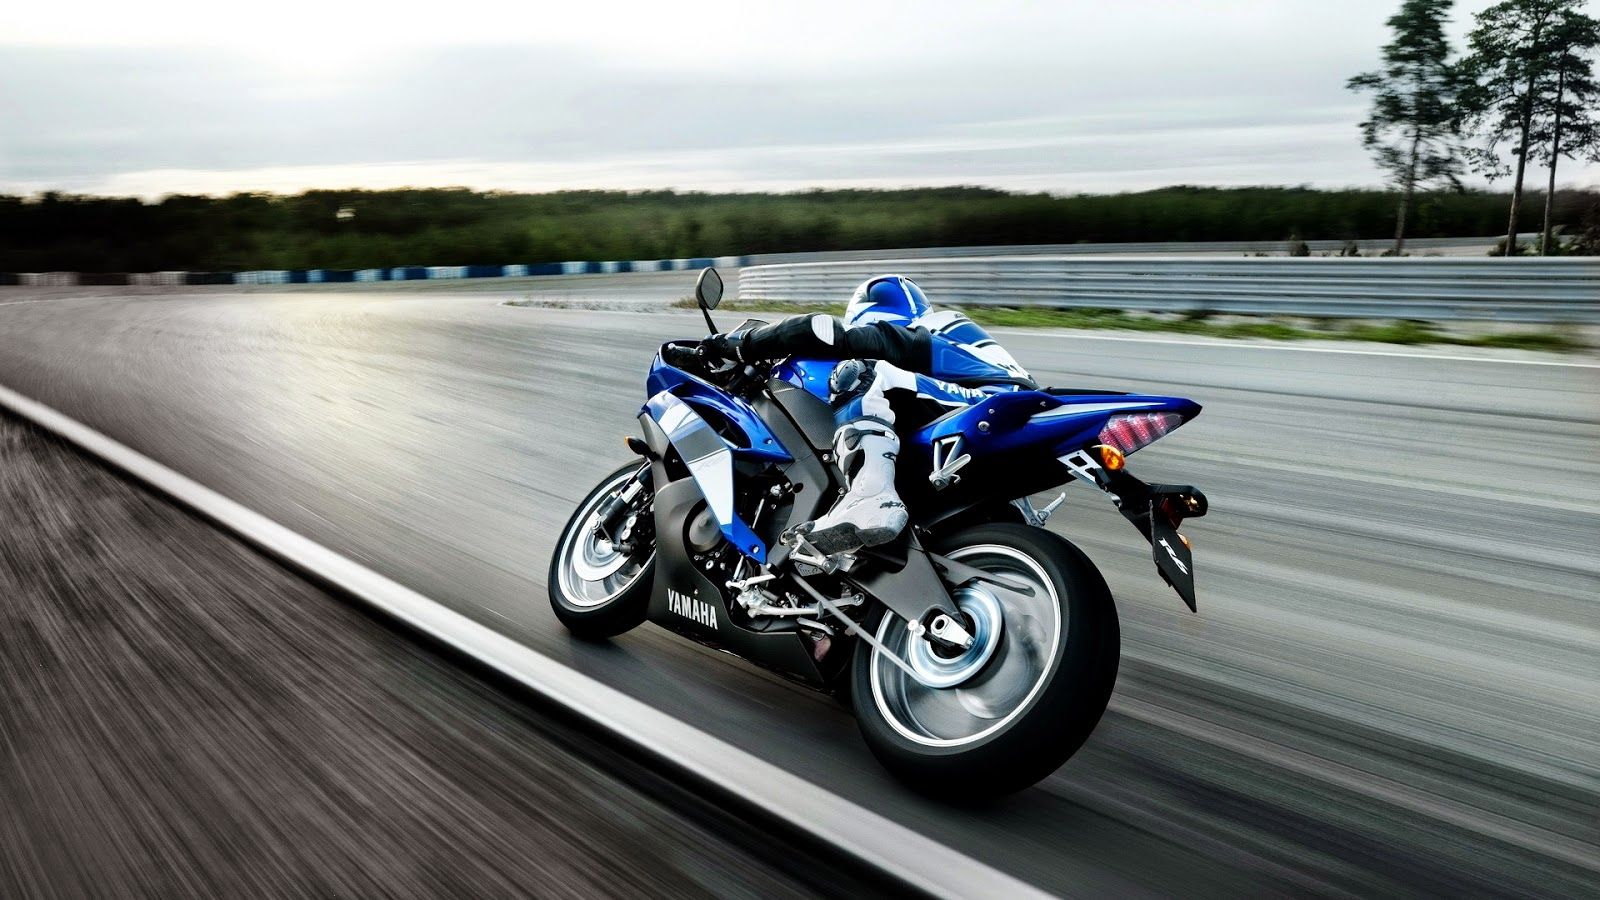 Fantastic Yamaha Motorcycle HD Wallpaper